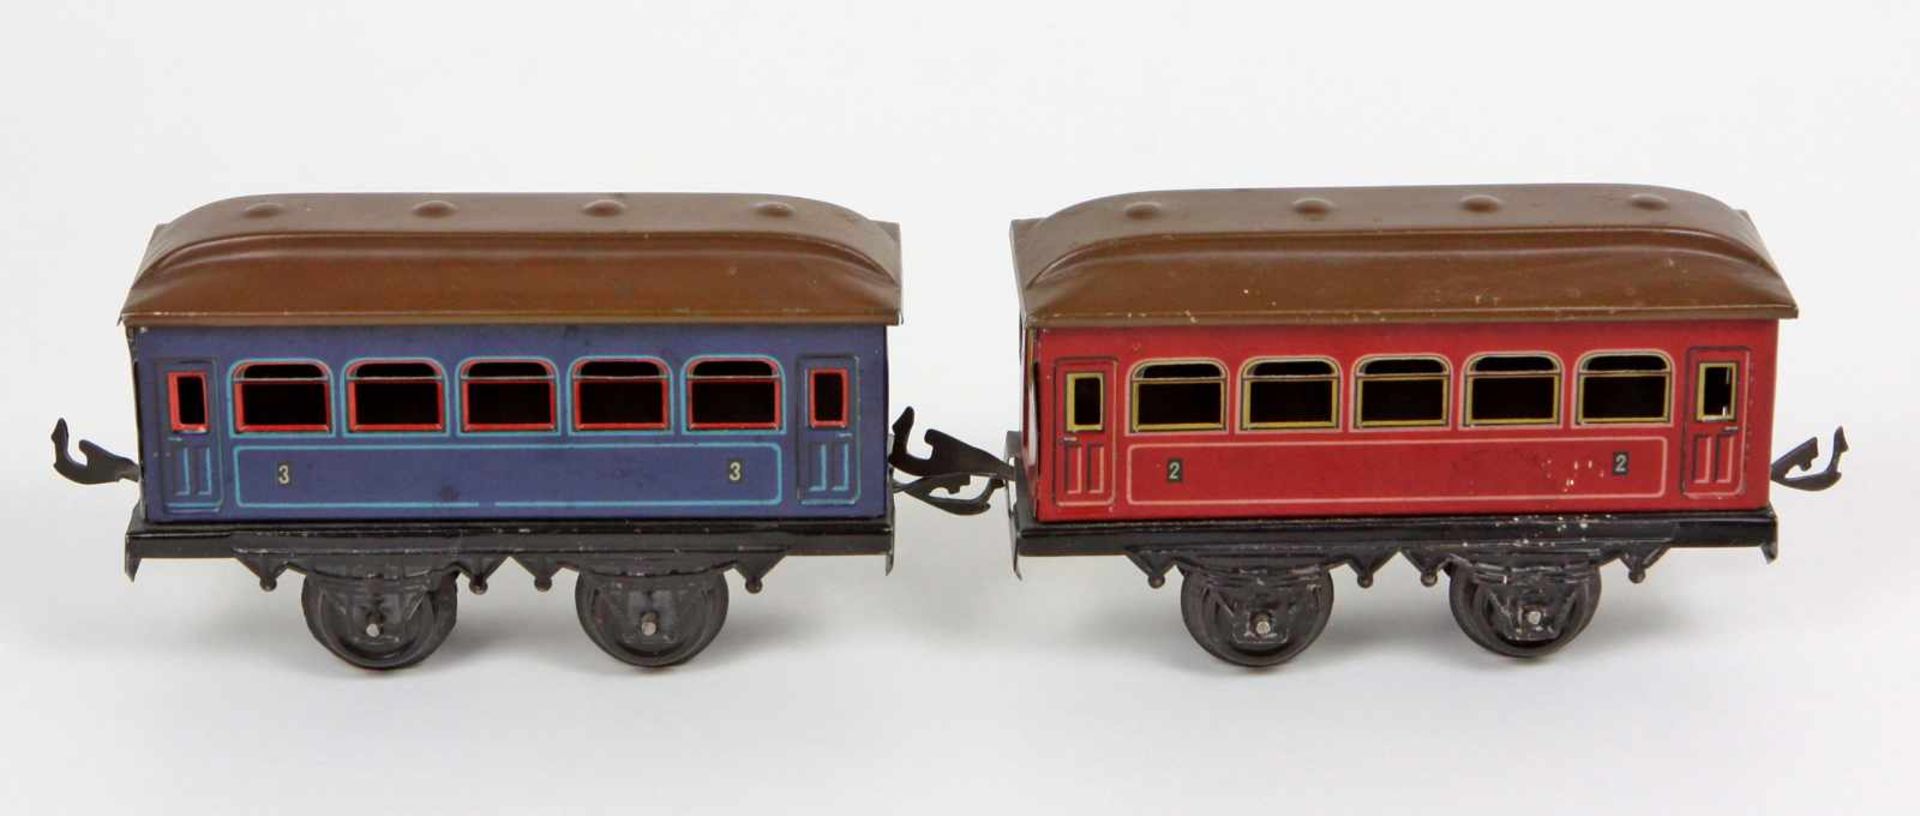 Bing 2 Personenwagen Spur 0Blech farbig lithographiert, gemarkt Bing Werke Nürnberg um 1930, zwei